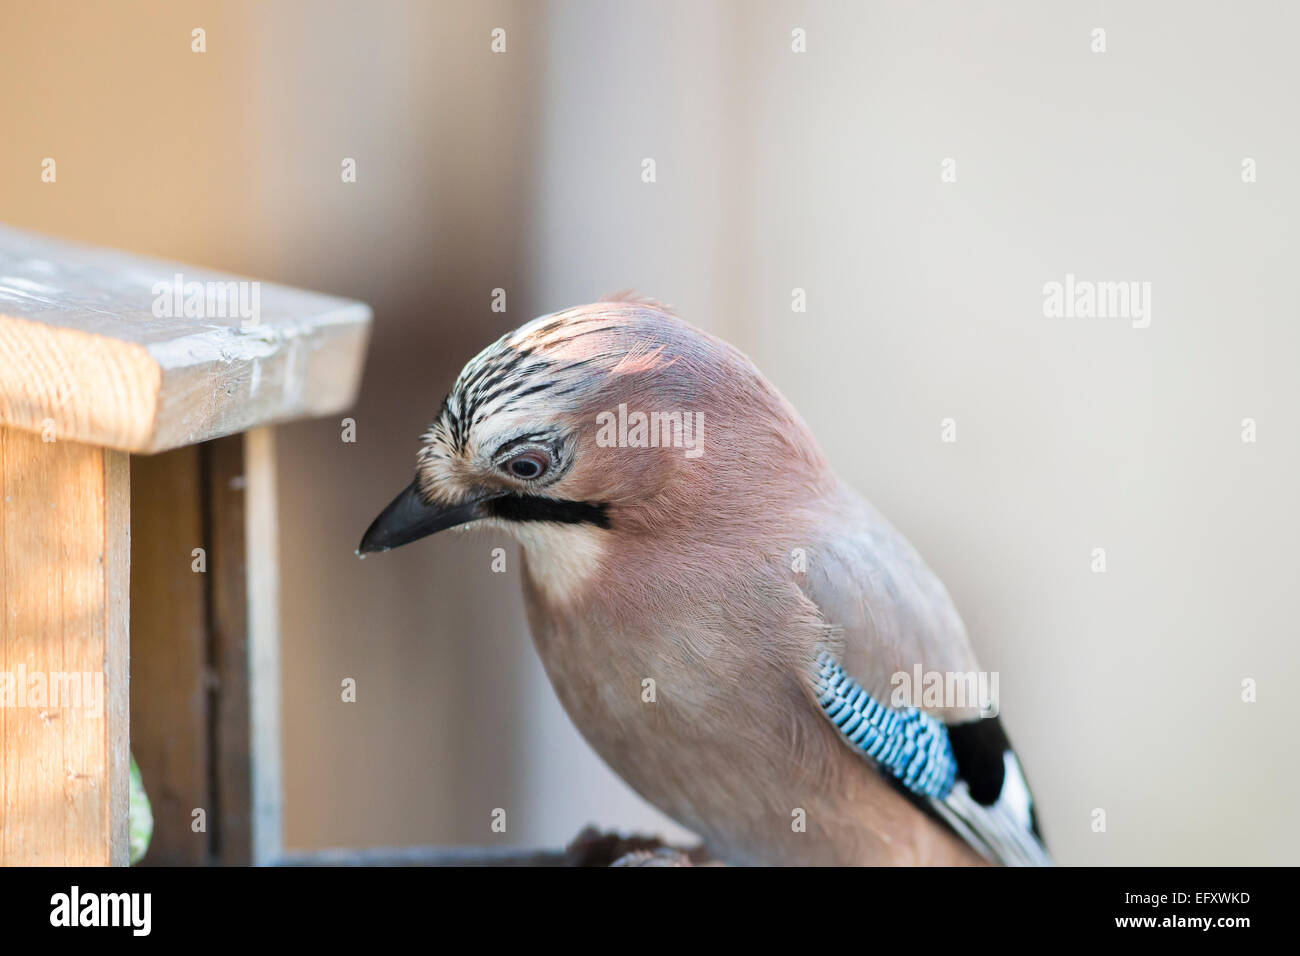 jay on bird feeder Stock Photo